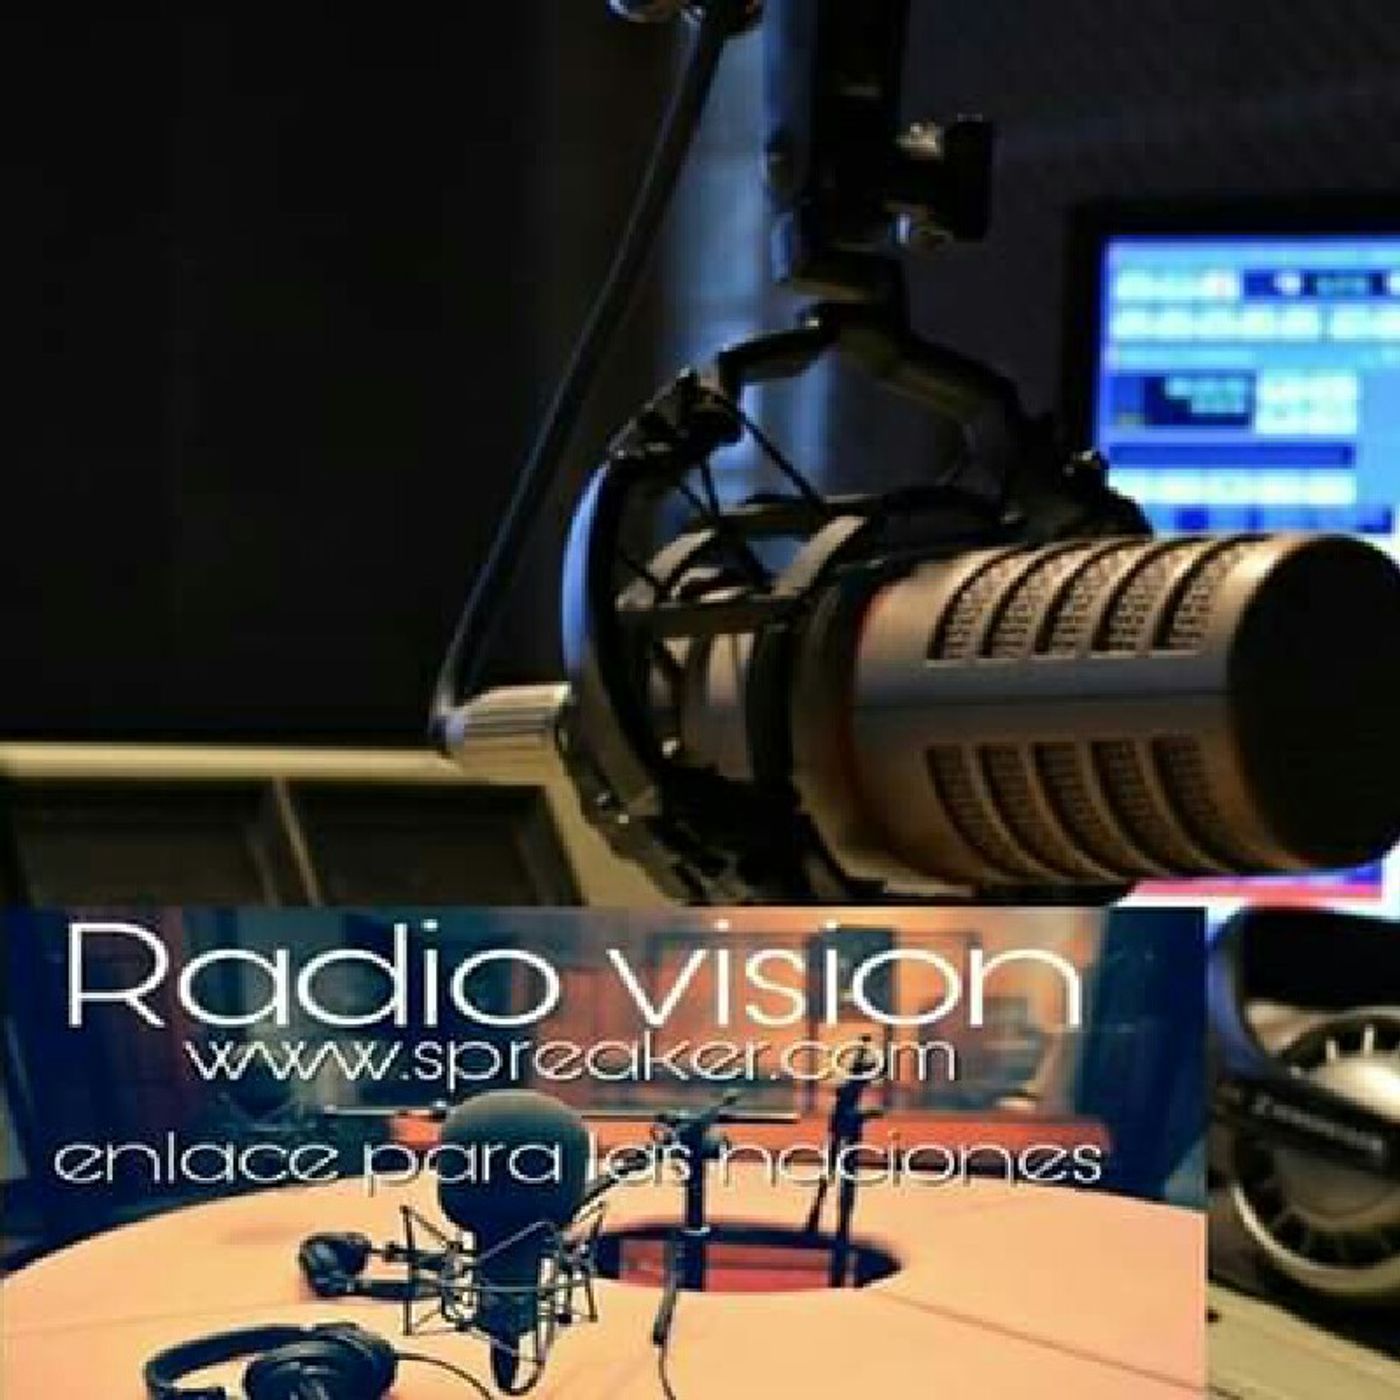 Enlace Para Las Naciones. Radio Vision